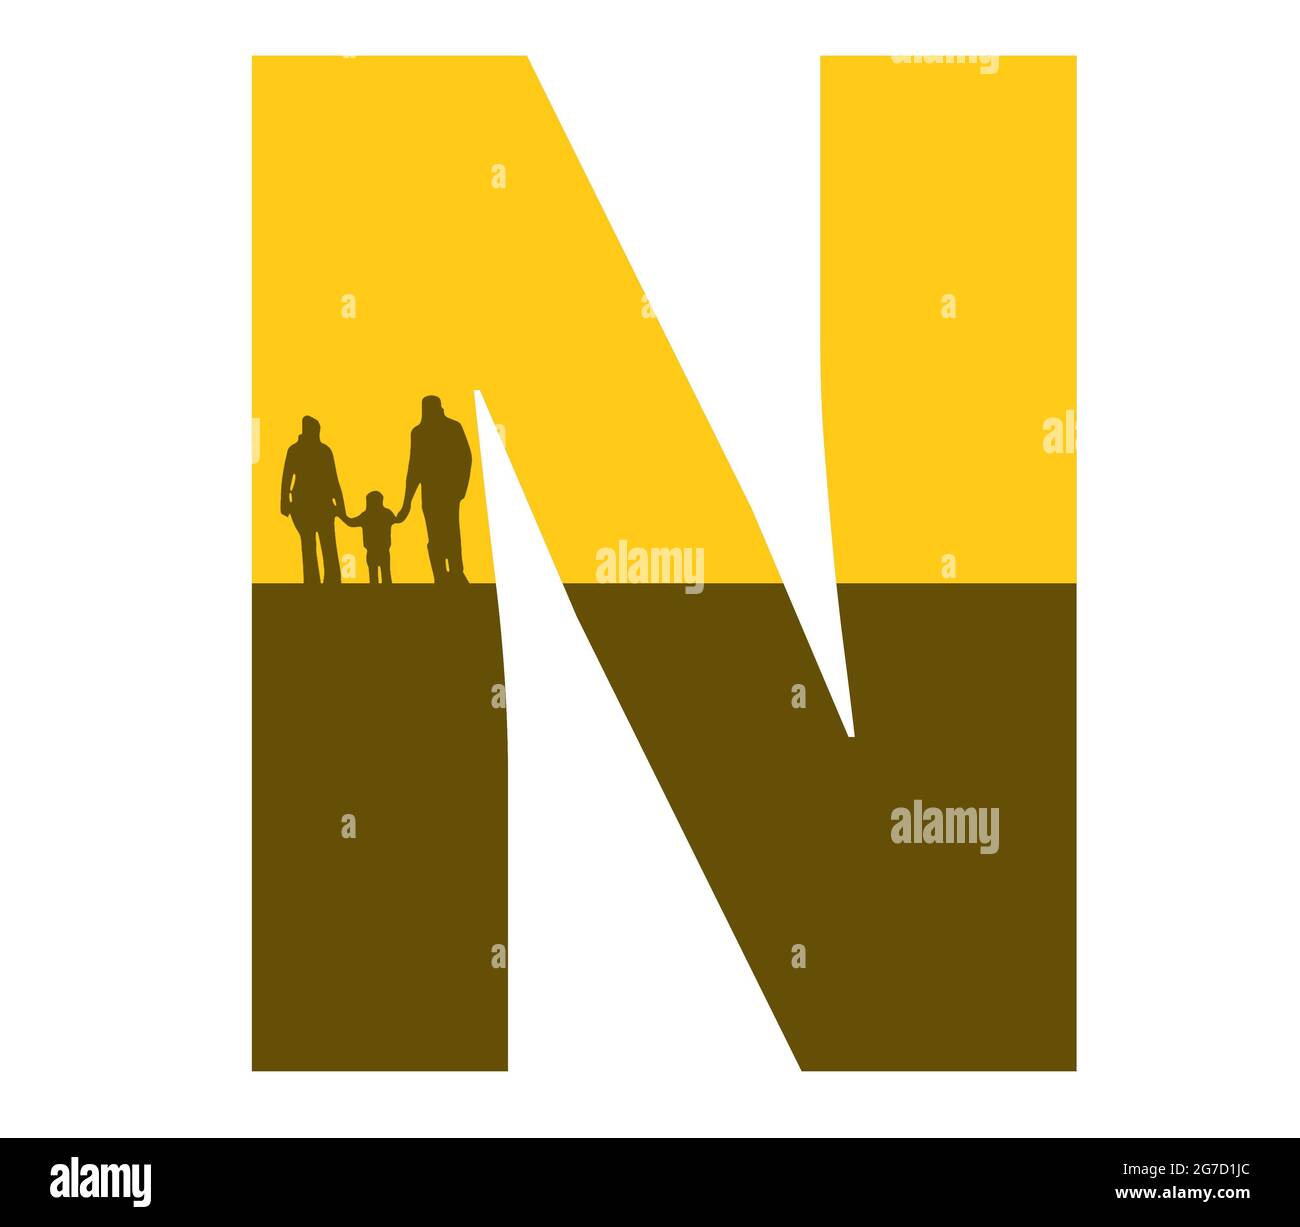 Lettre N de l'alphabet avec une silhouette de famille, de père, de mère et d'enfant, de couleur ocre et marron Banque D'Images